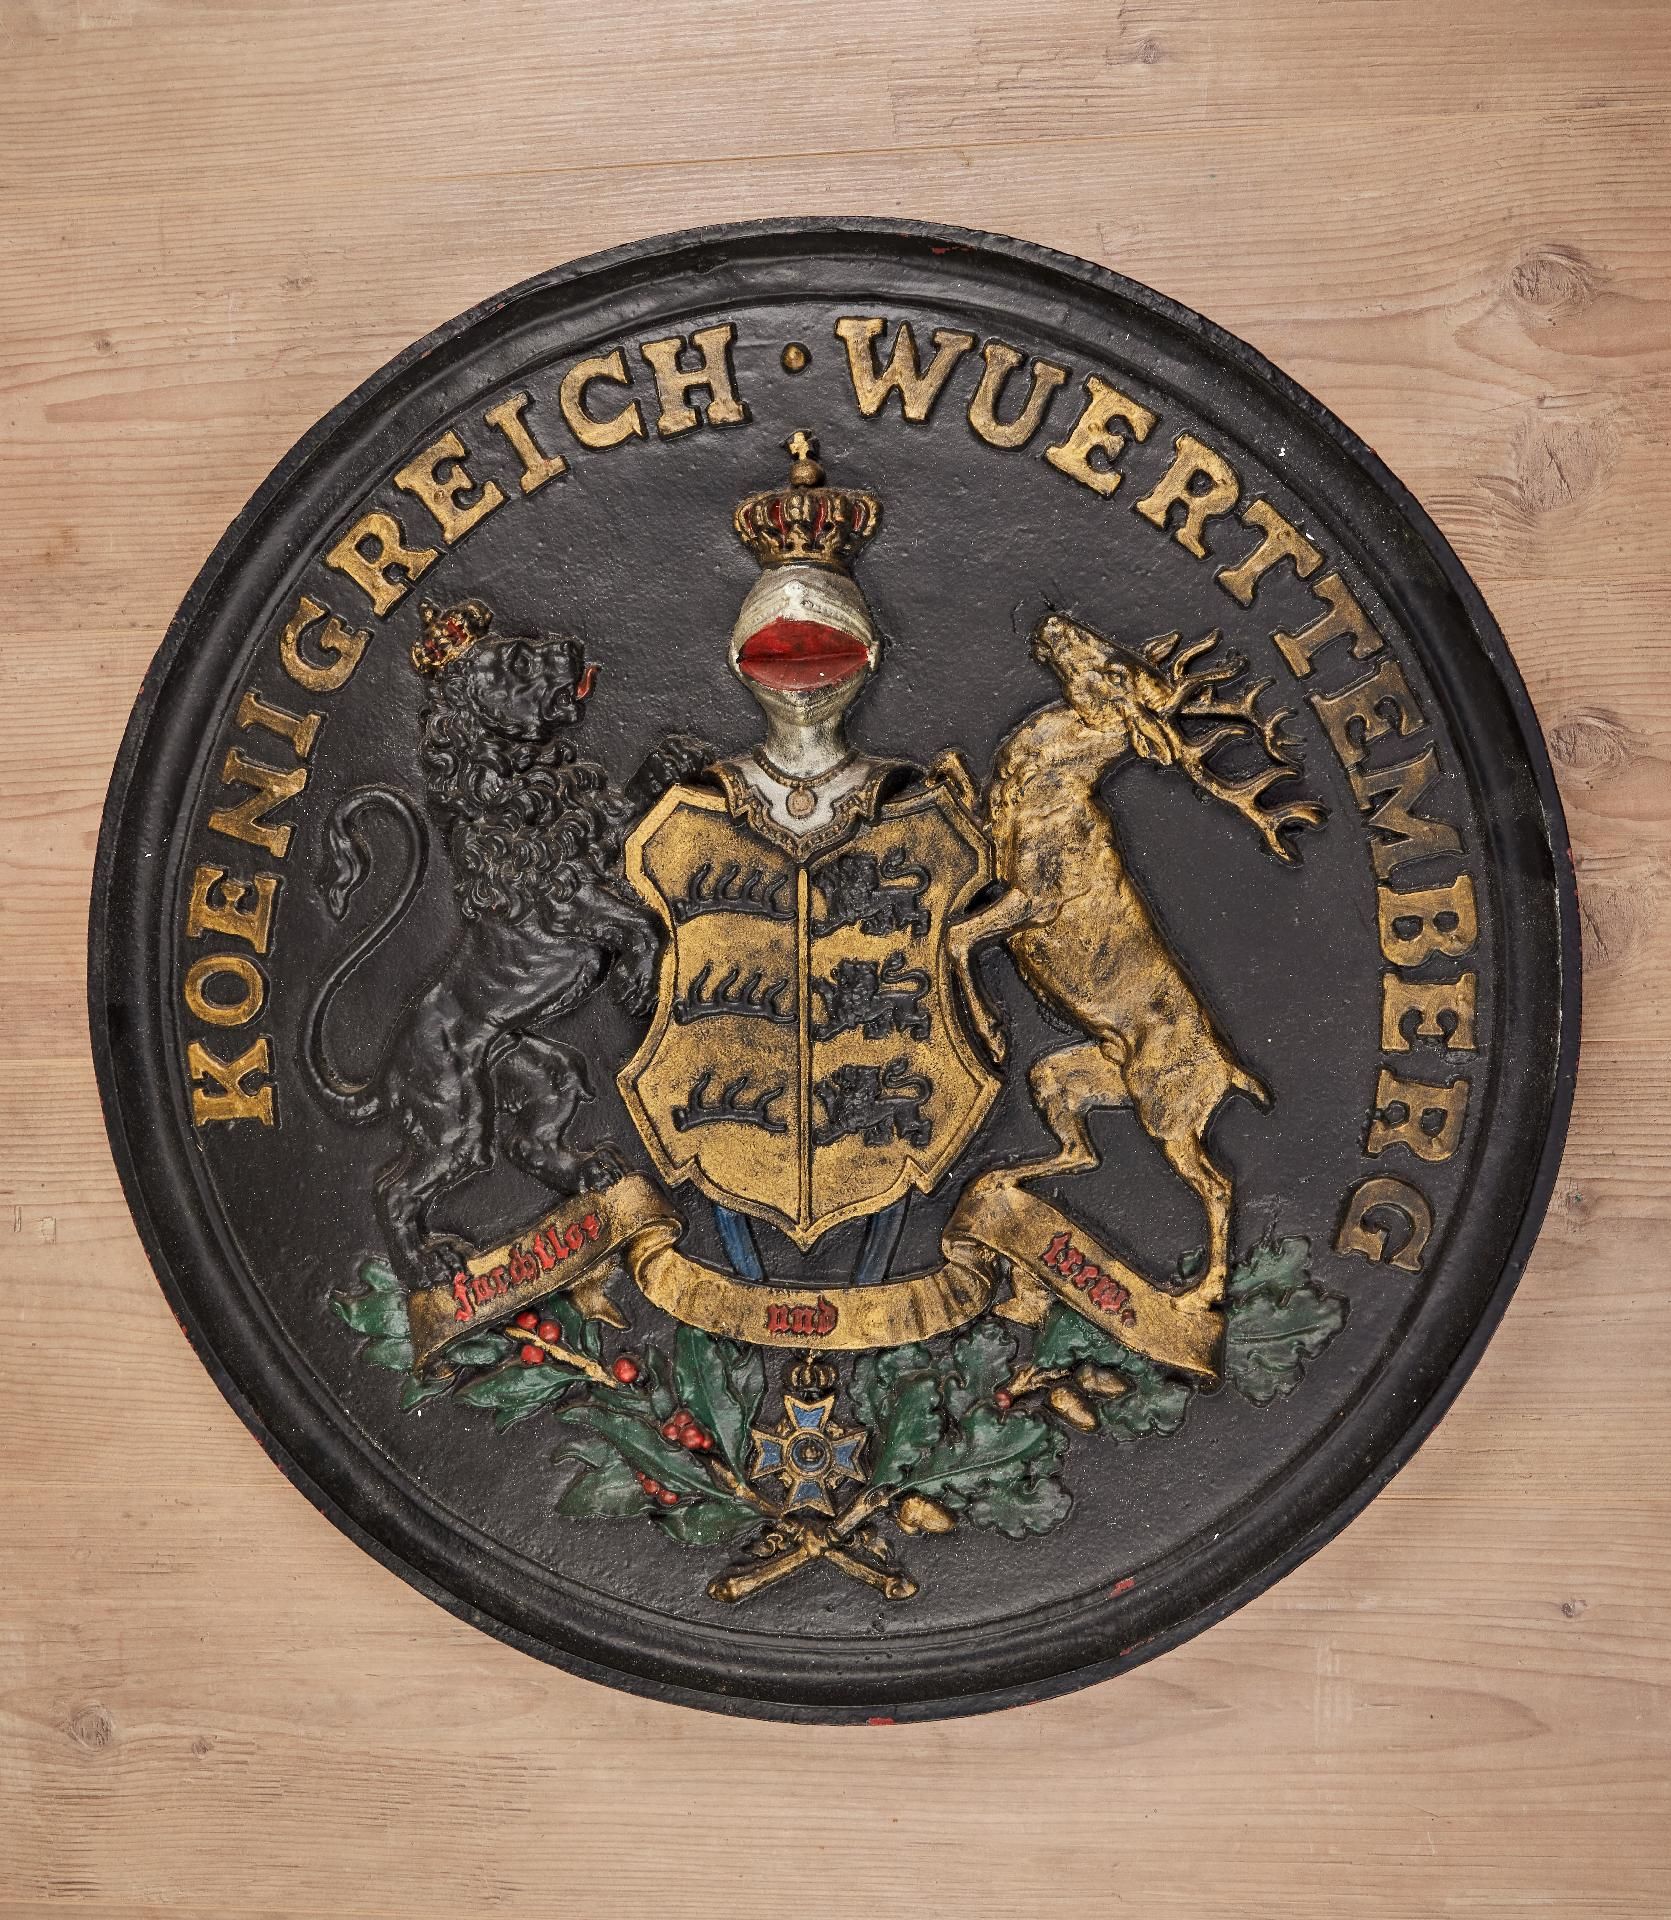 Württemberg : Großes gußeisernes Wappen des Königreichs Württemberg.